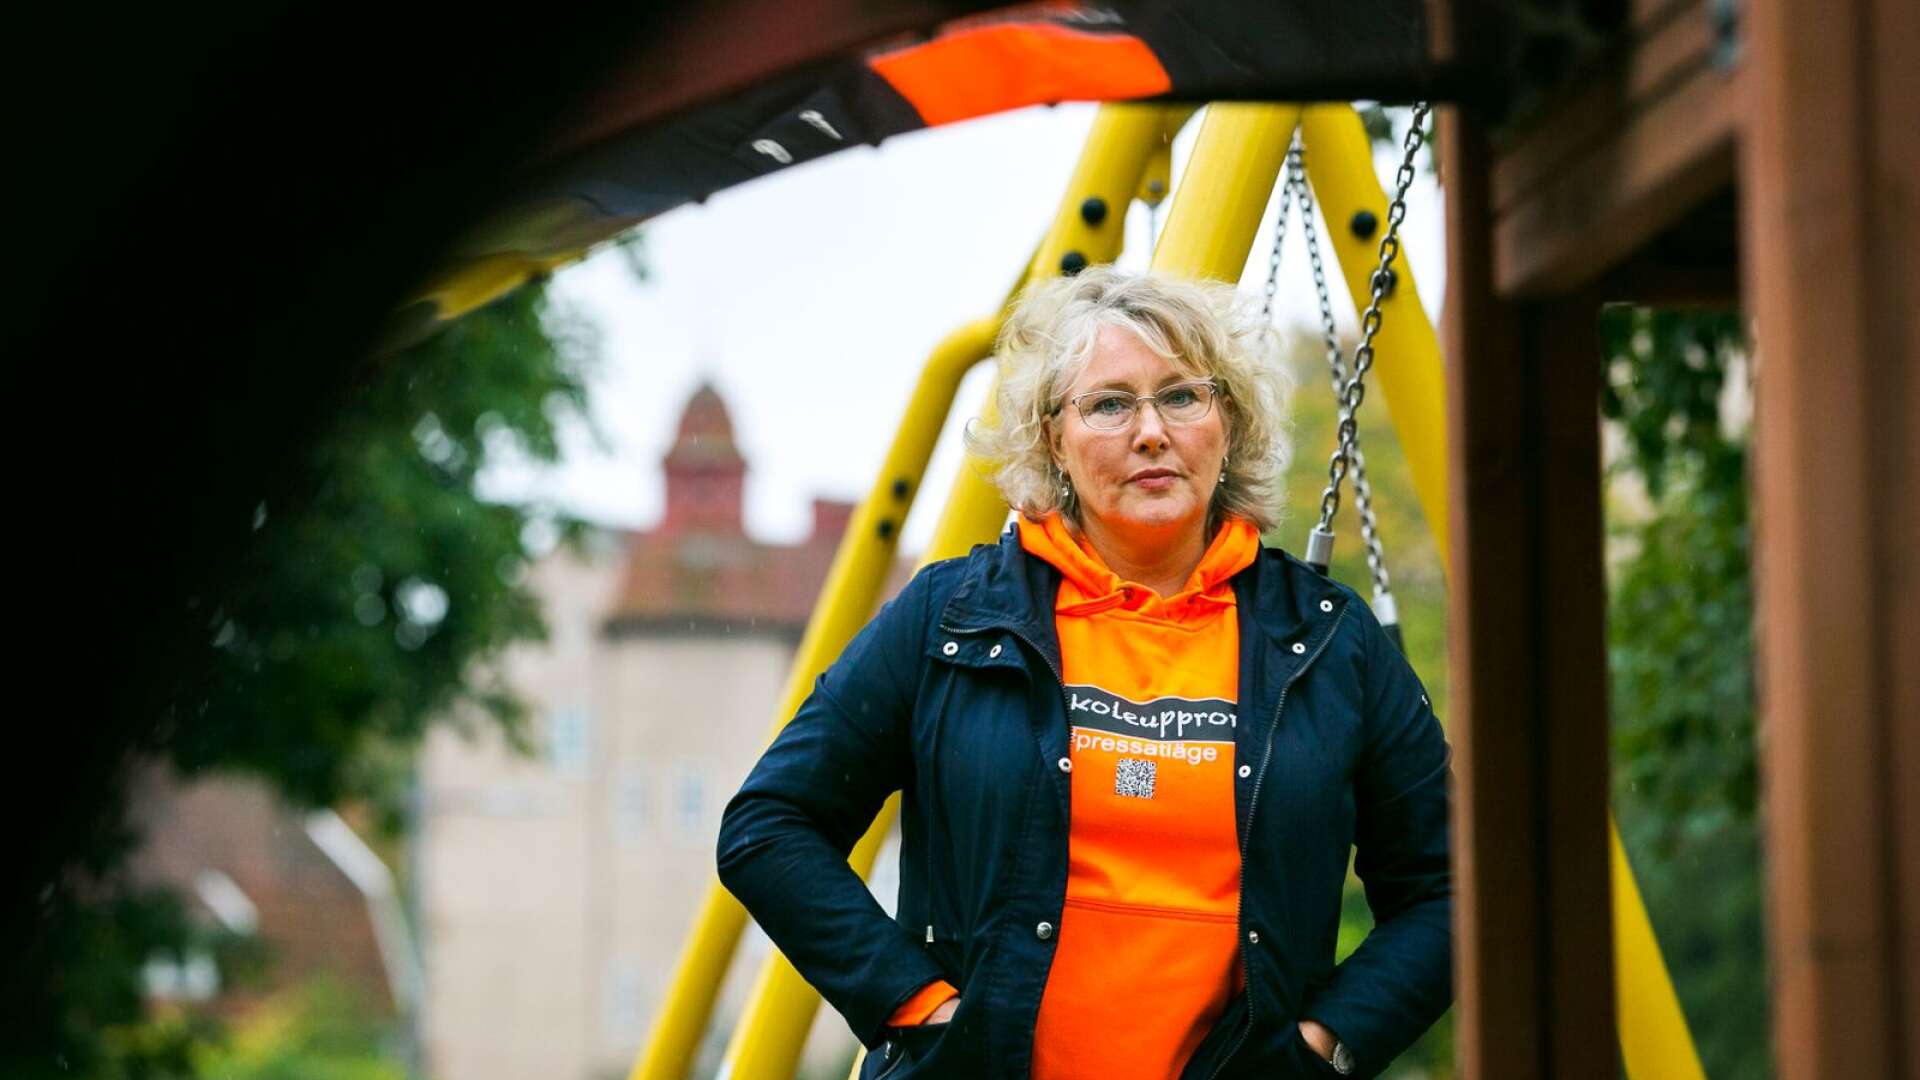 Monica Lindström jobbar som förskolelärare i Karlstad och är också aktiv i Förskoleupproret. Hon vittnar om att situationen i Karlstad och hela Sverige är kritisk.